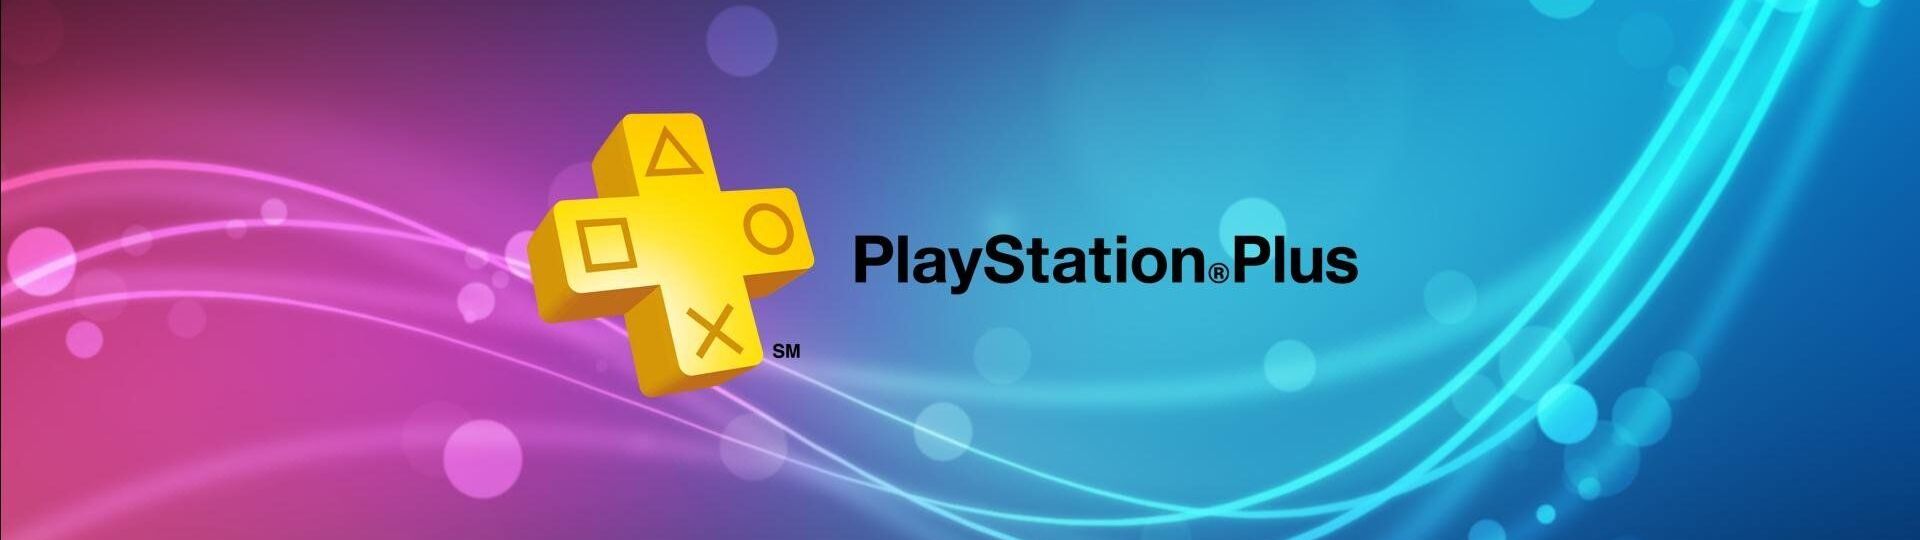 Sony aktualizuje informace o nové službě PS Plus | Novinky